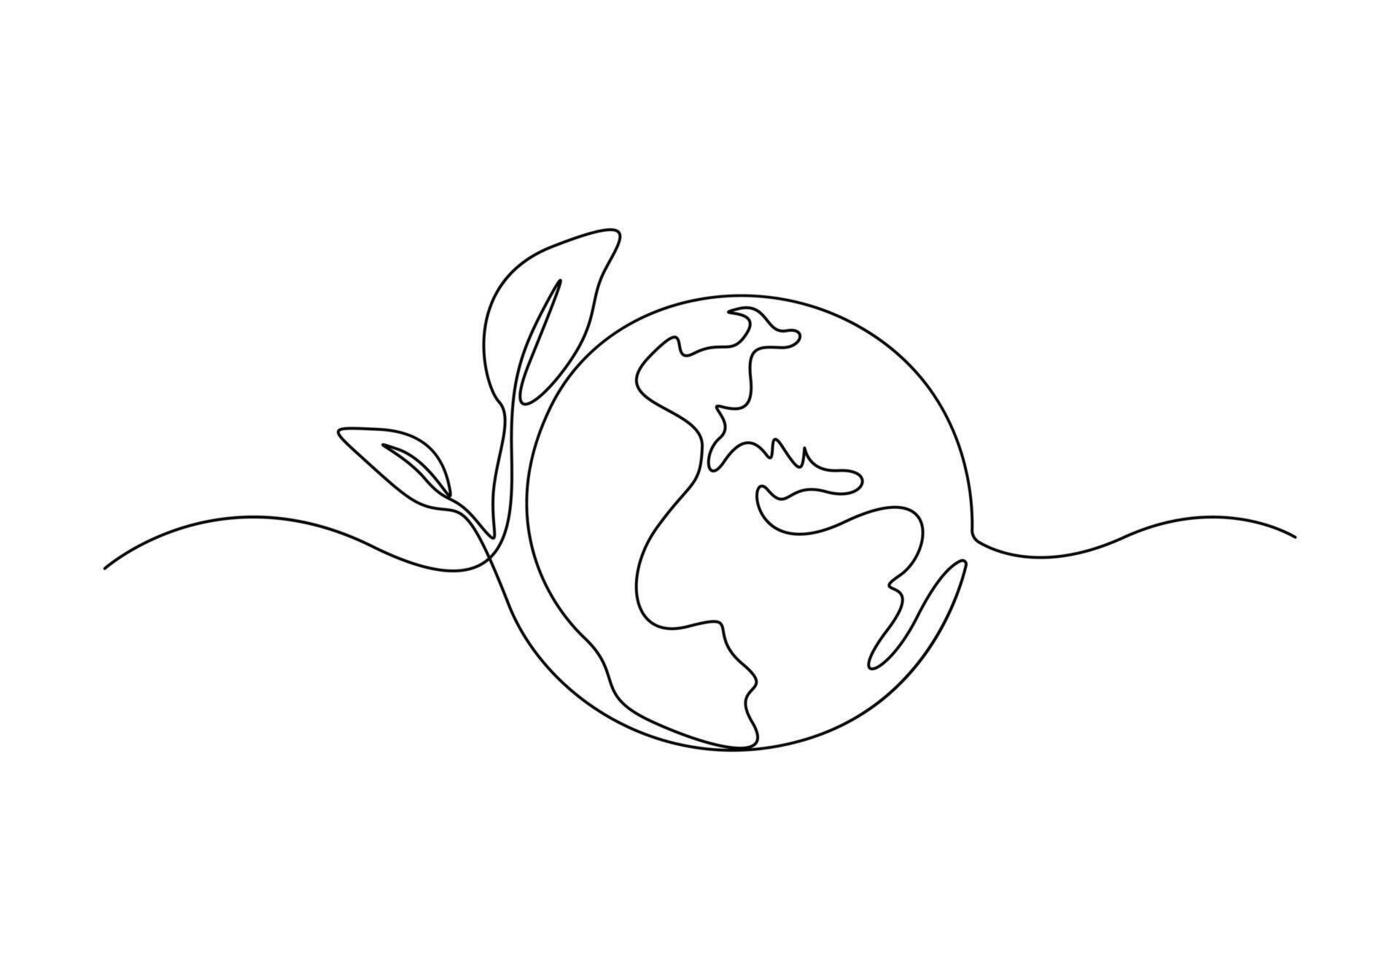 kontinuierlich einer Linie Zeichnung von ein Welt Karte Vektor Illustration